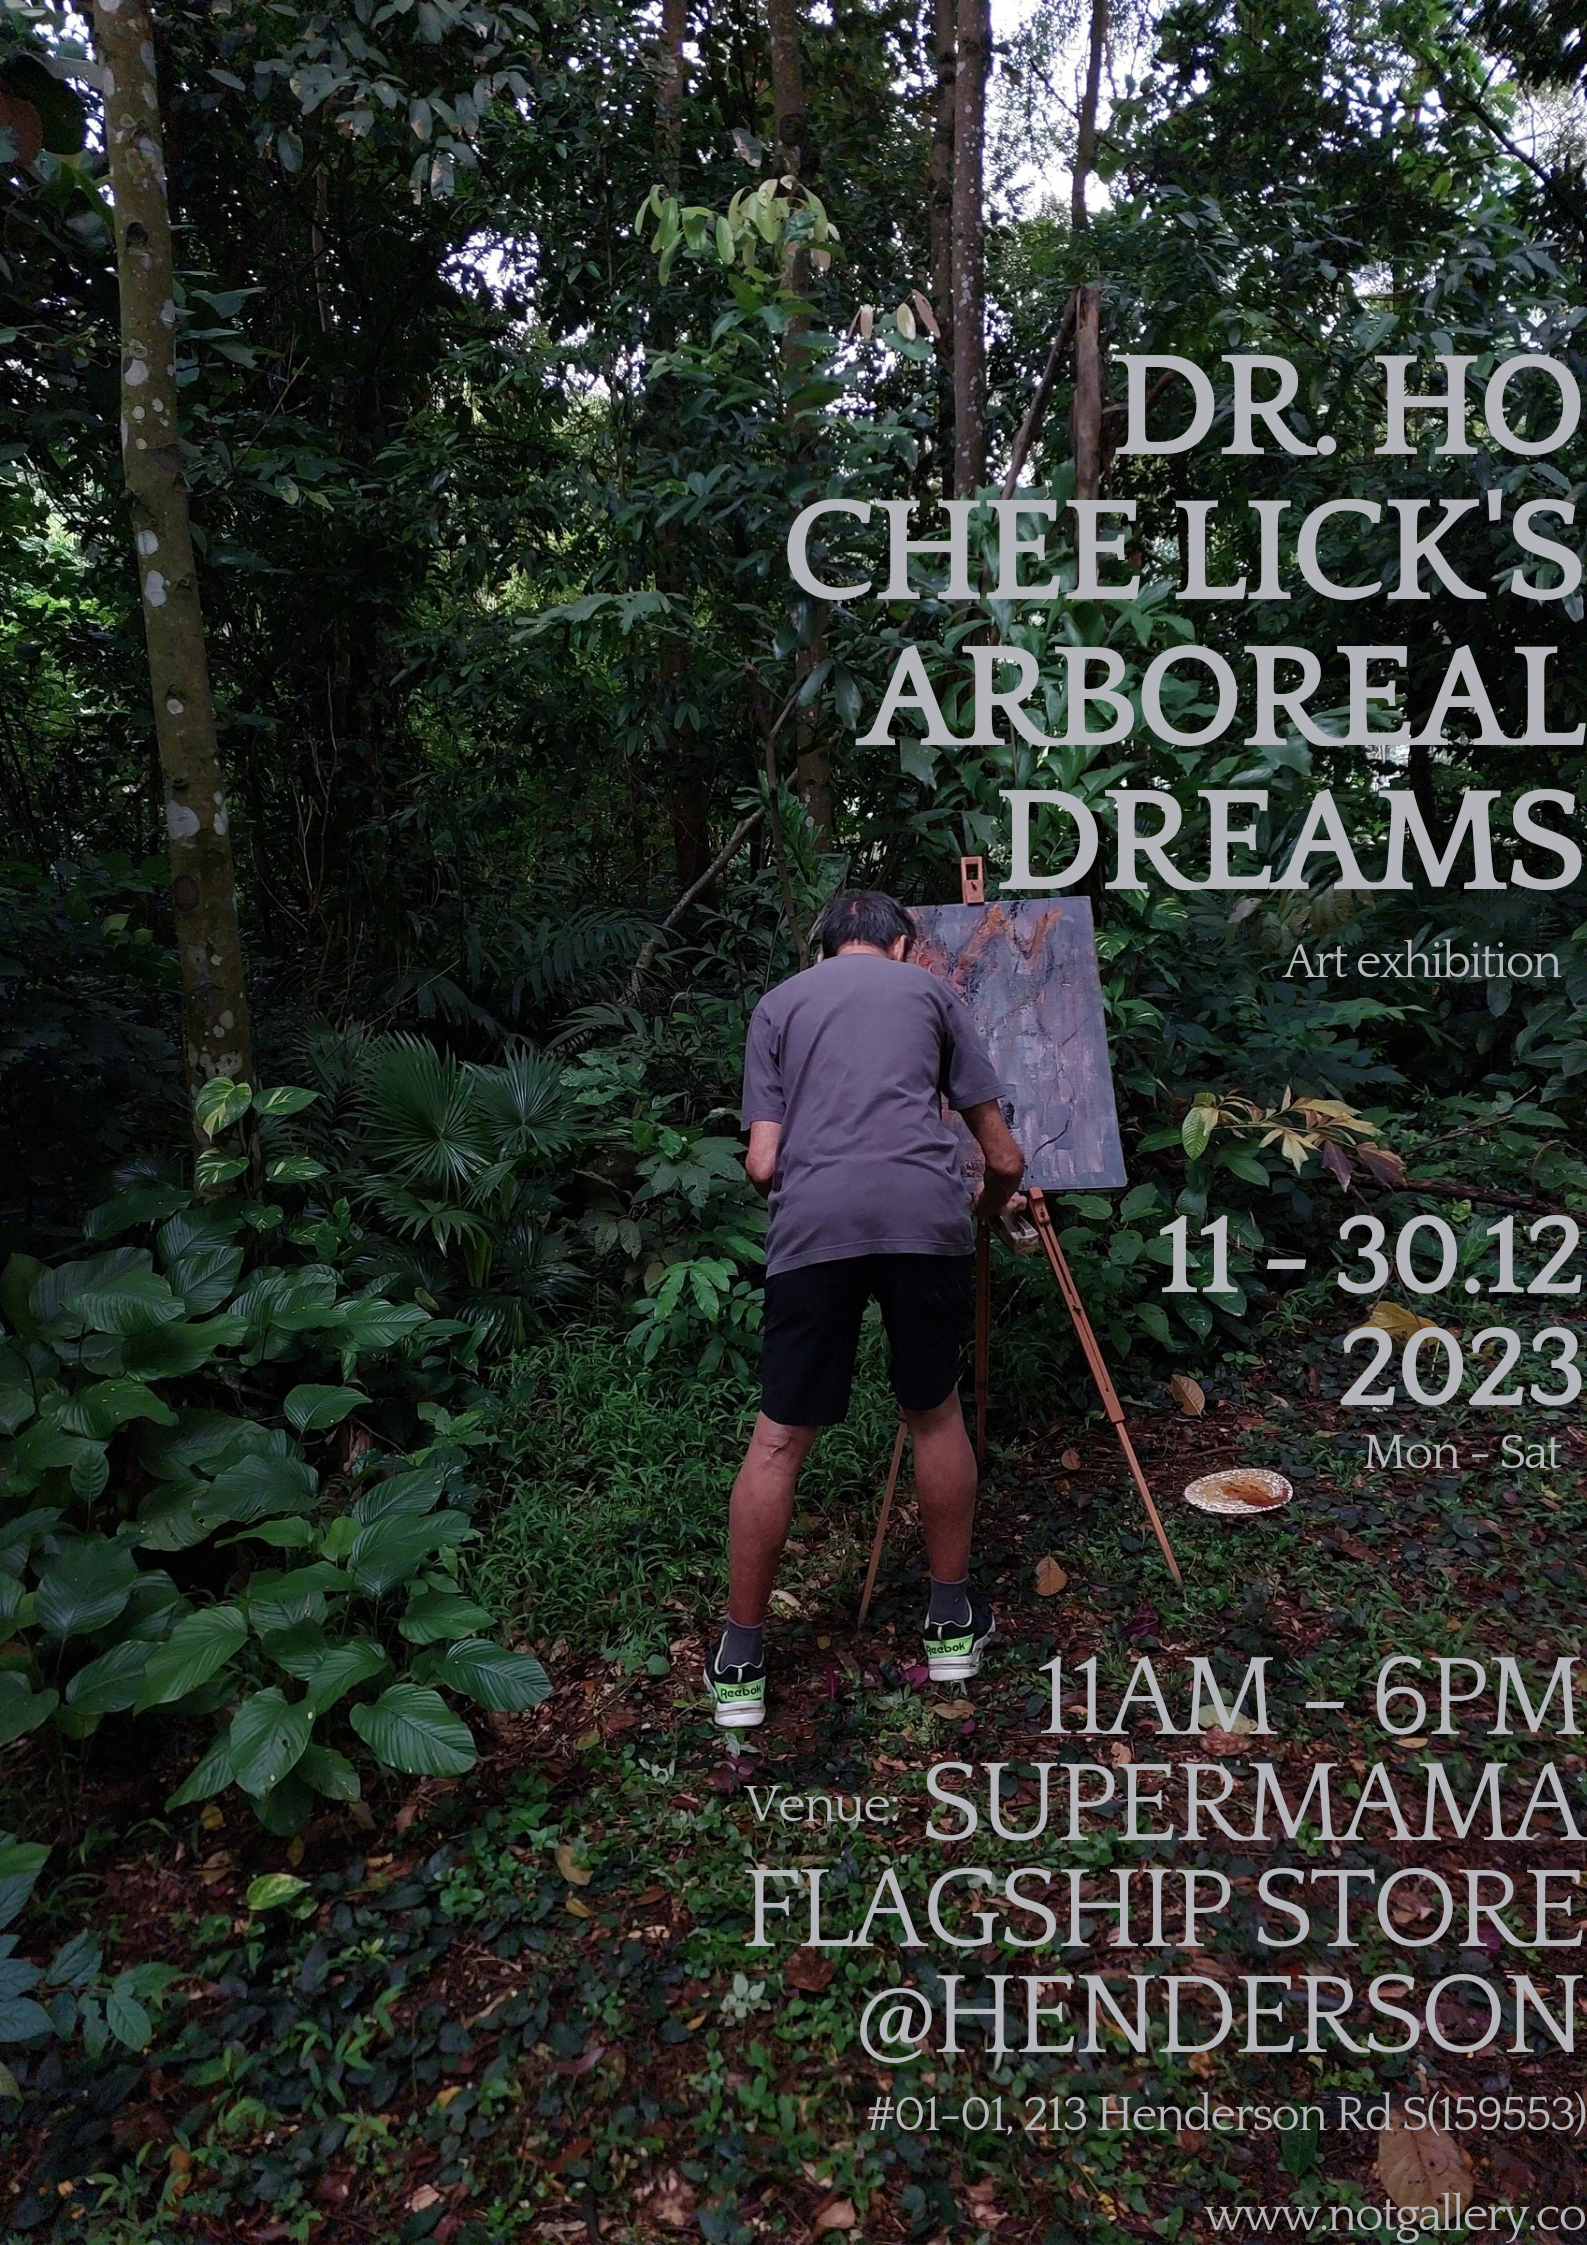 Dr. Ho Chee Lick's Arboreal Dreams